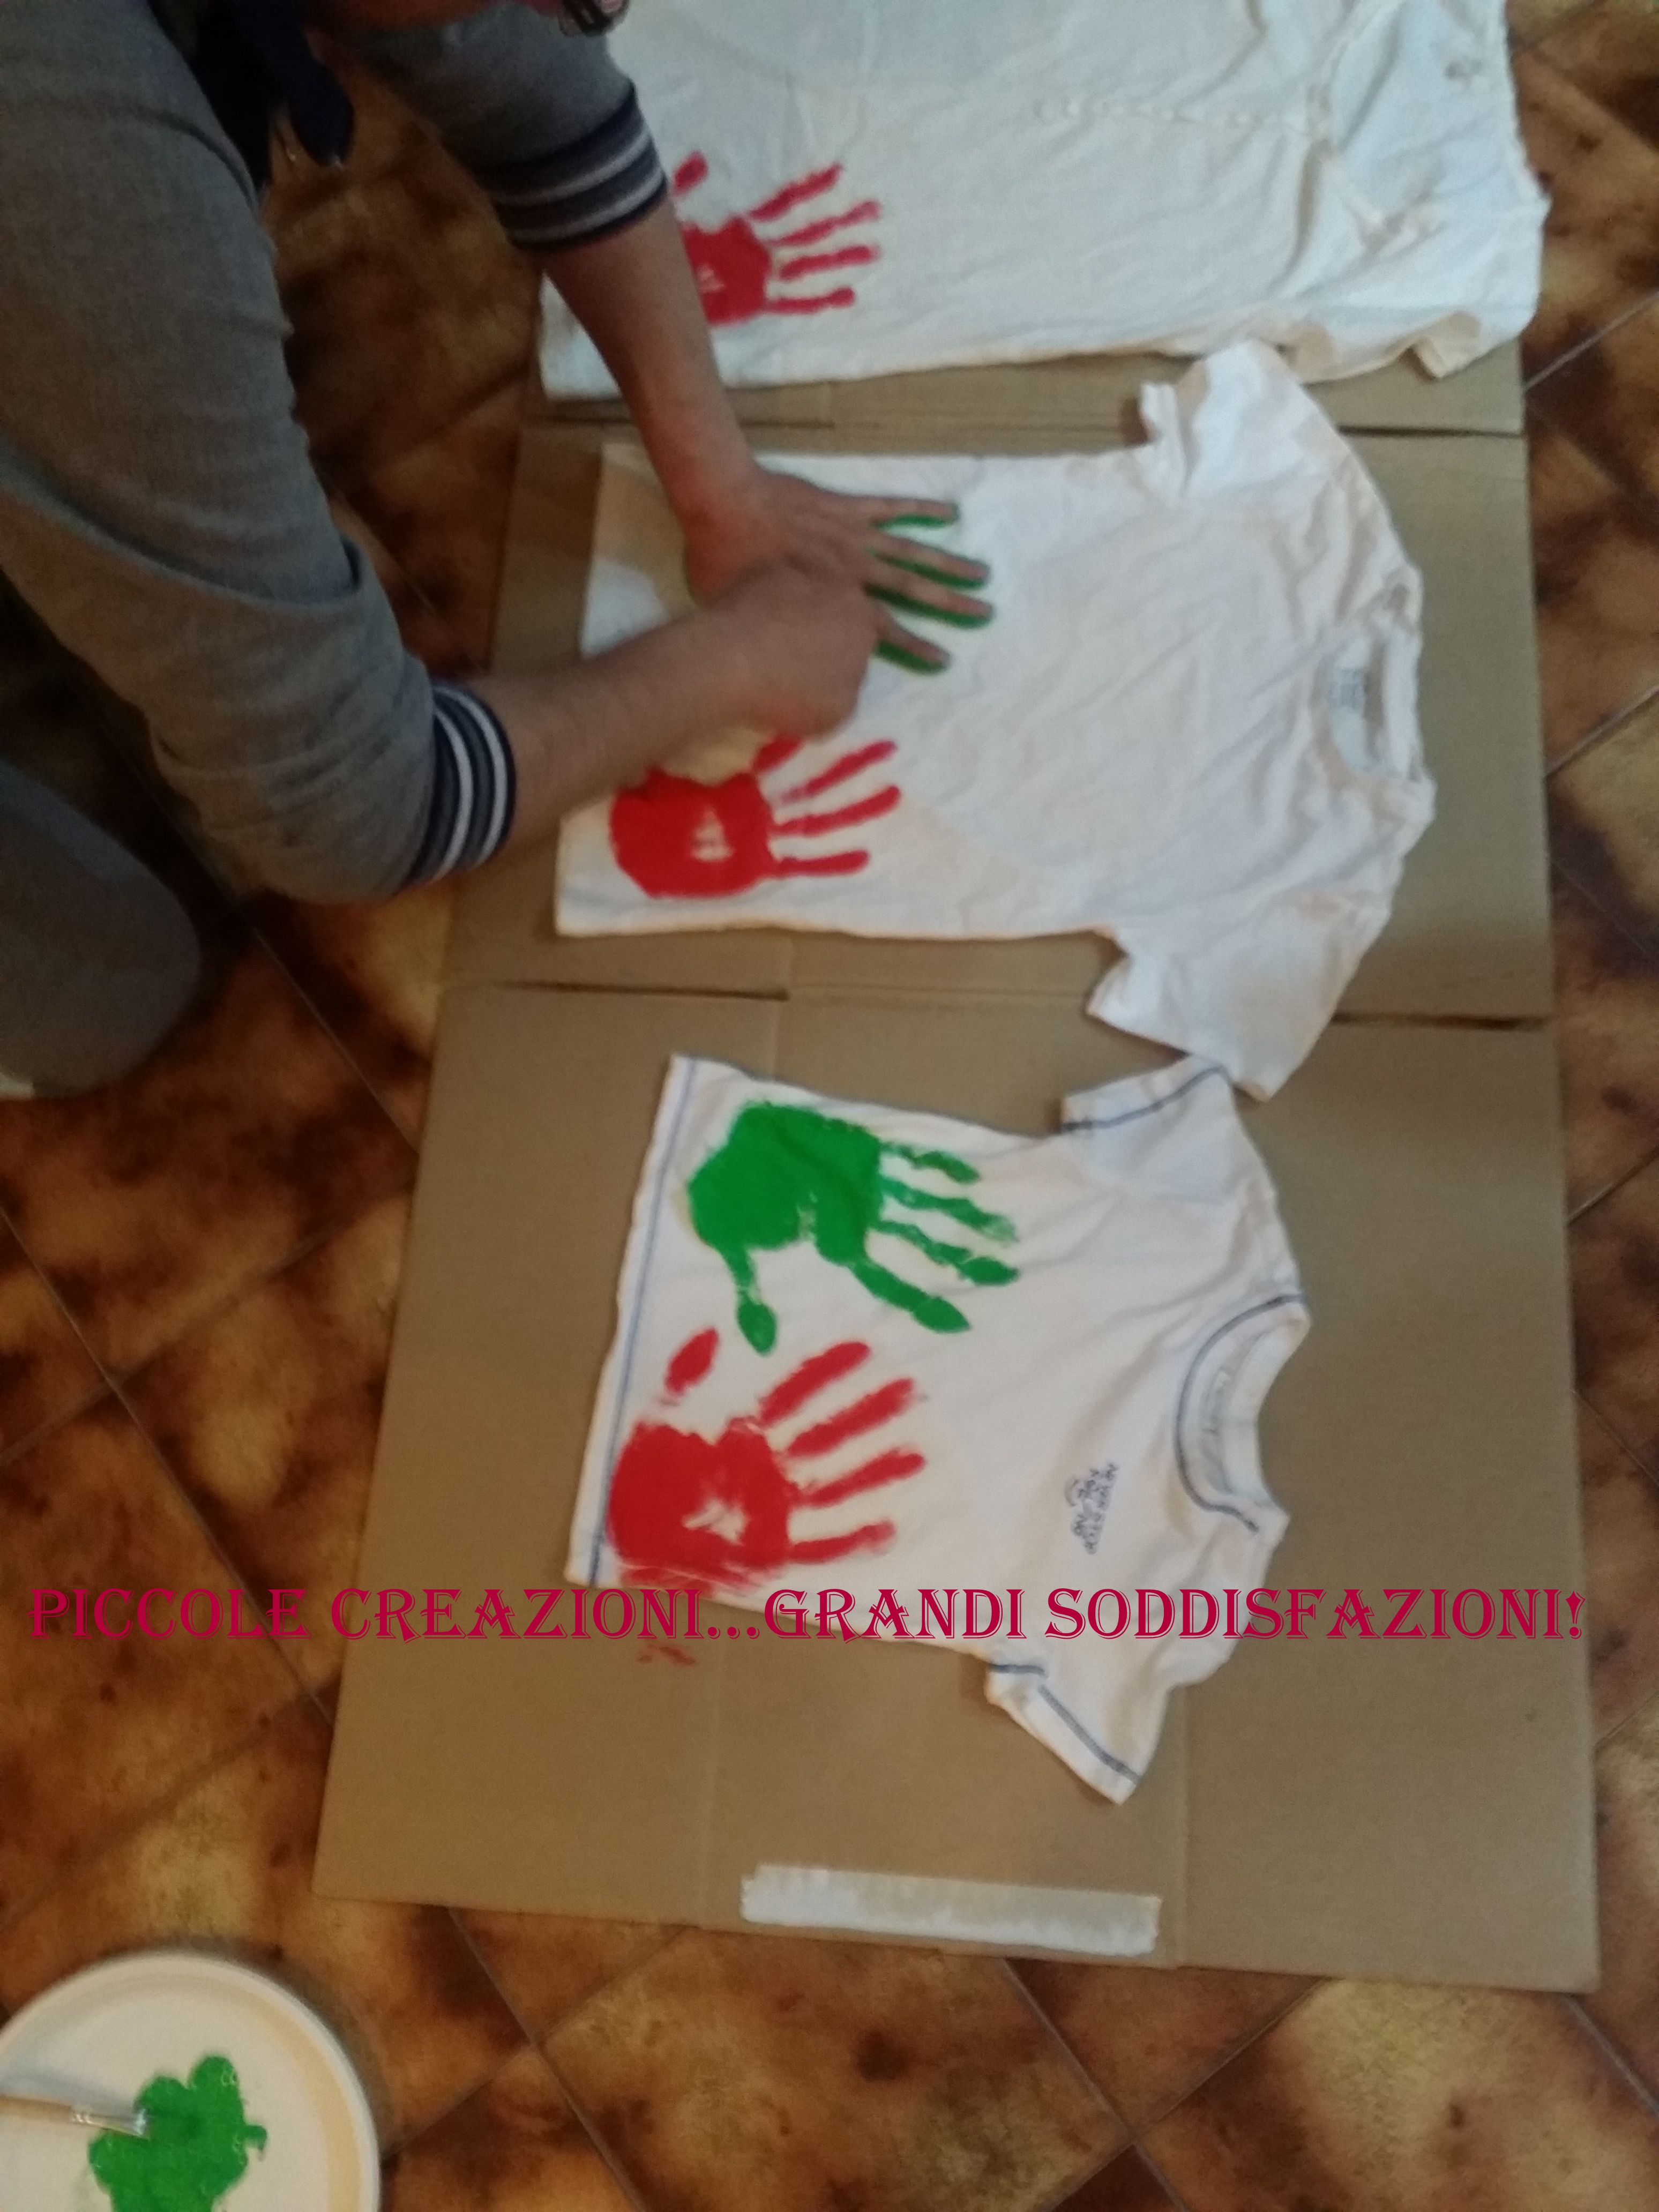 Magliette con impronte delle mani